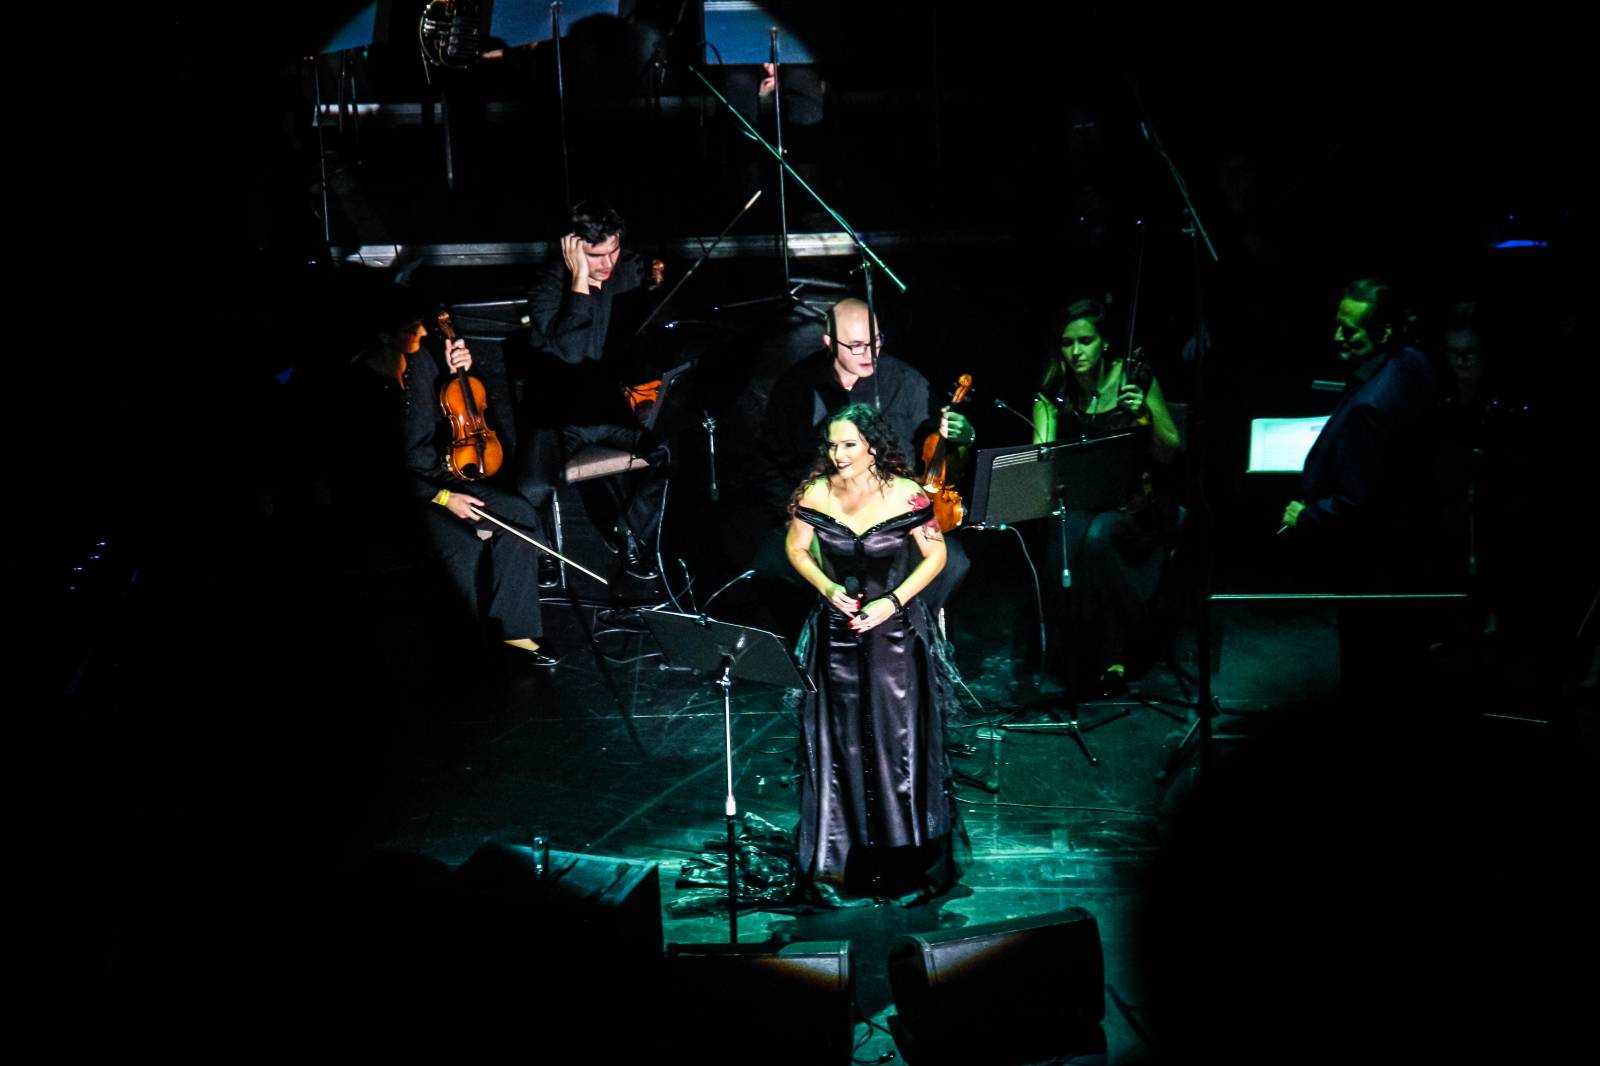 Tarja Turunen, bývalá zpěvačka Nightwish, zazpívala v Praze v rámci vánočního turné s filharmonií